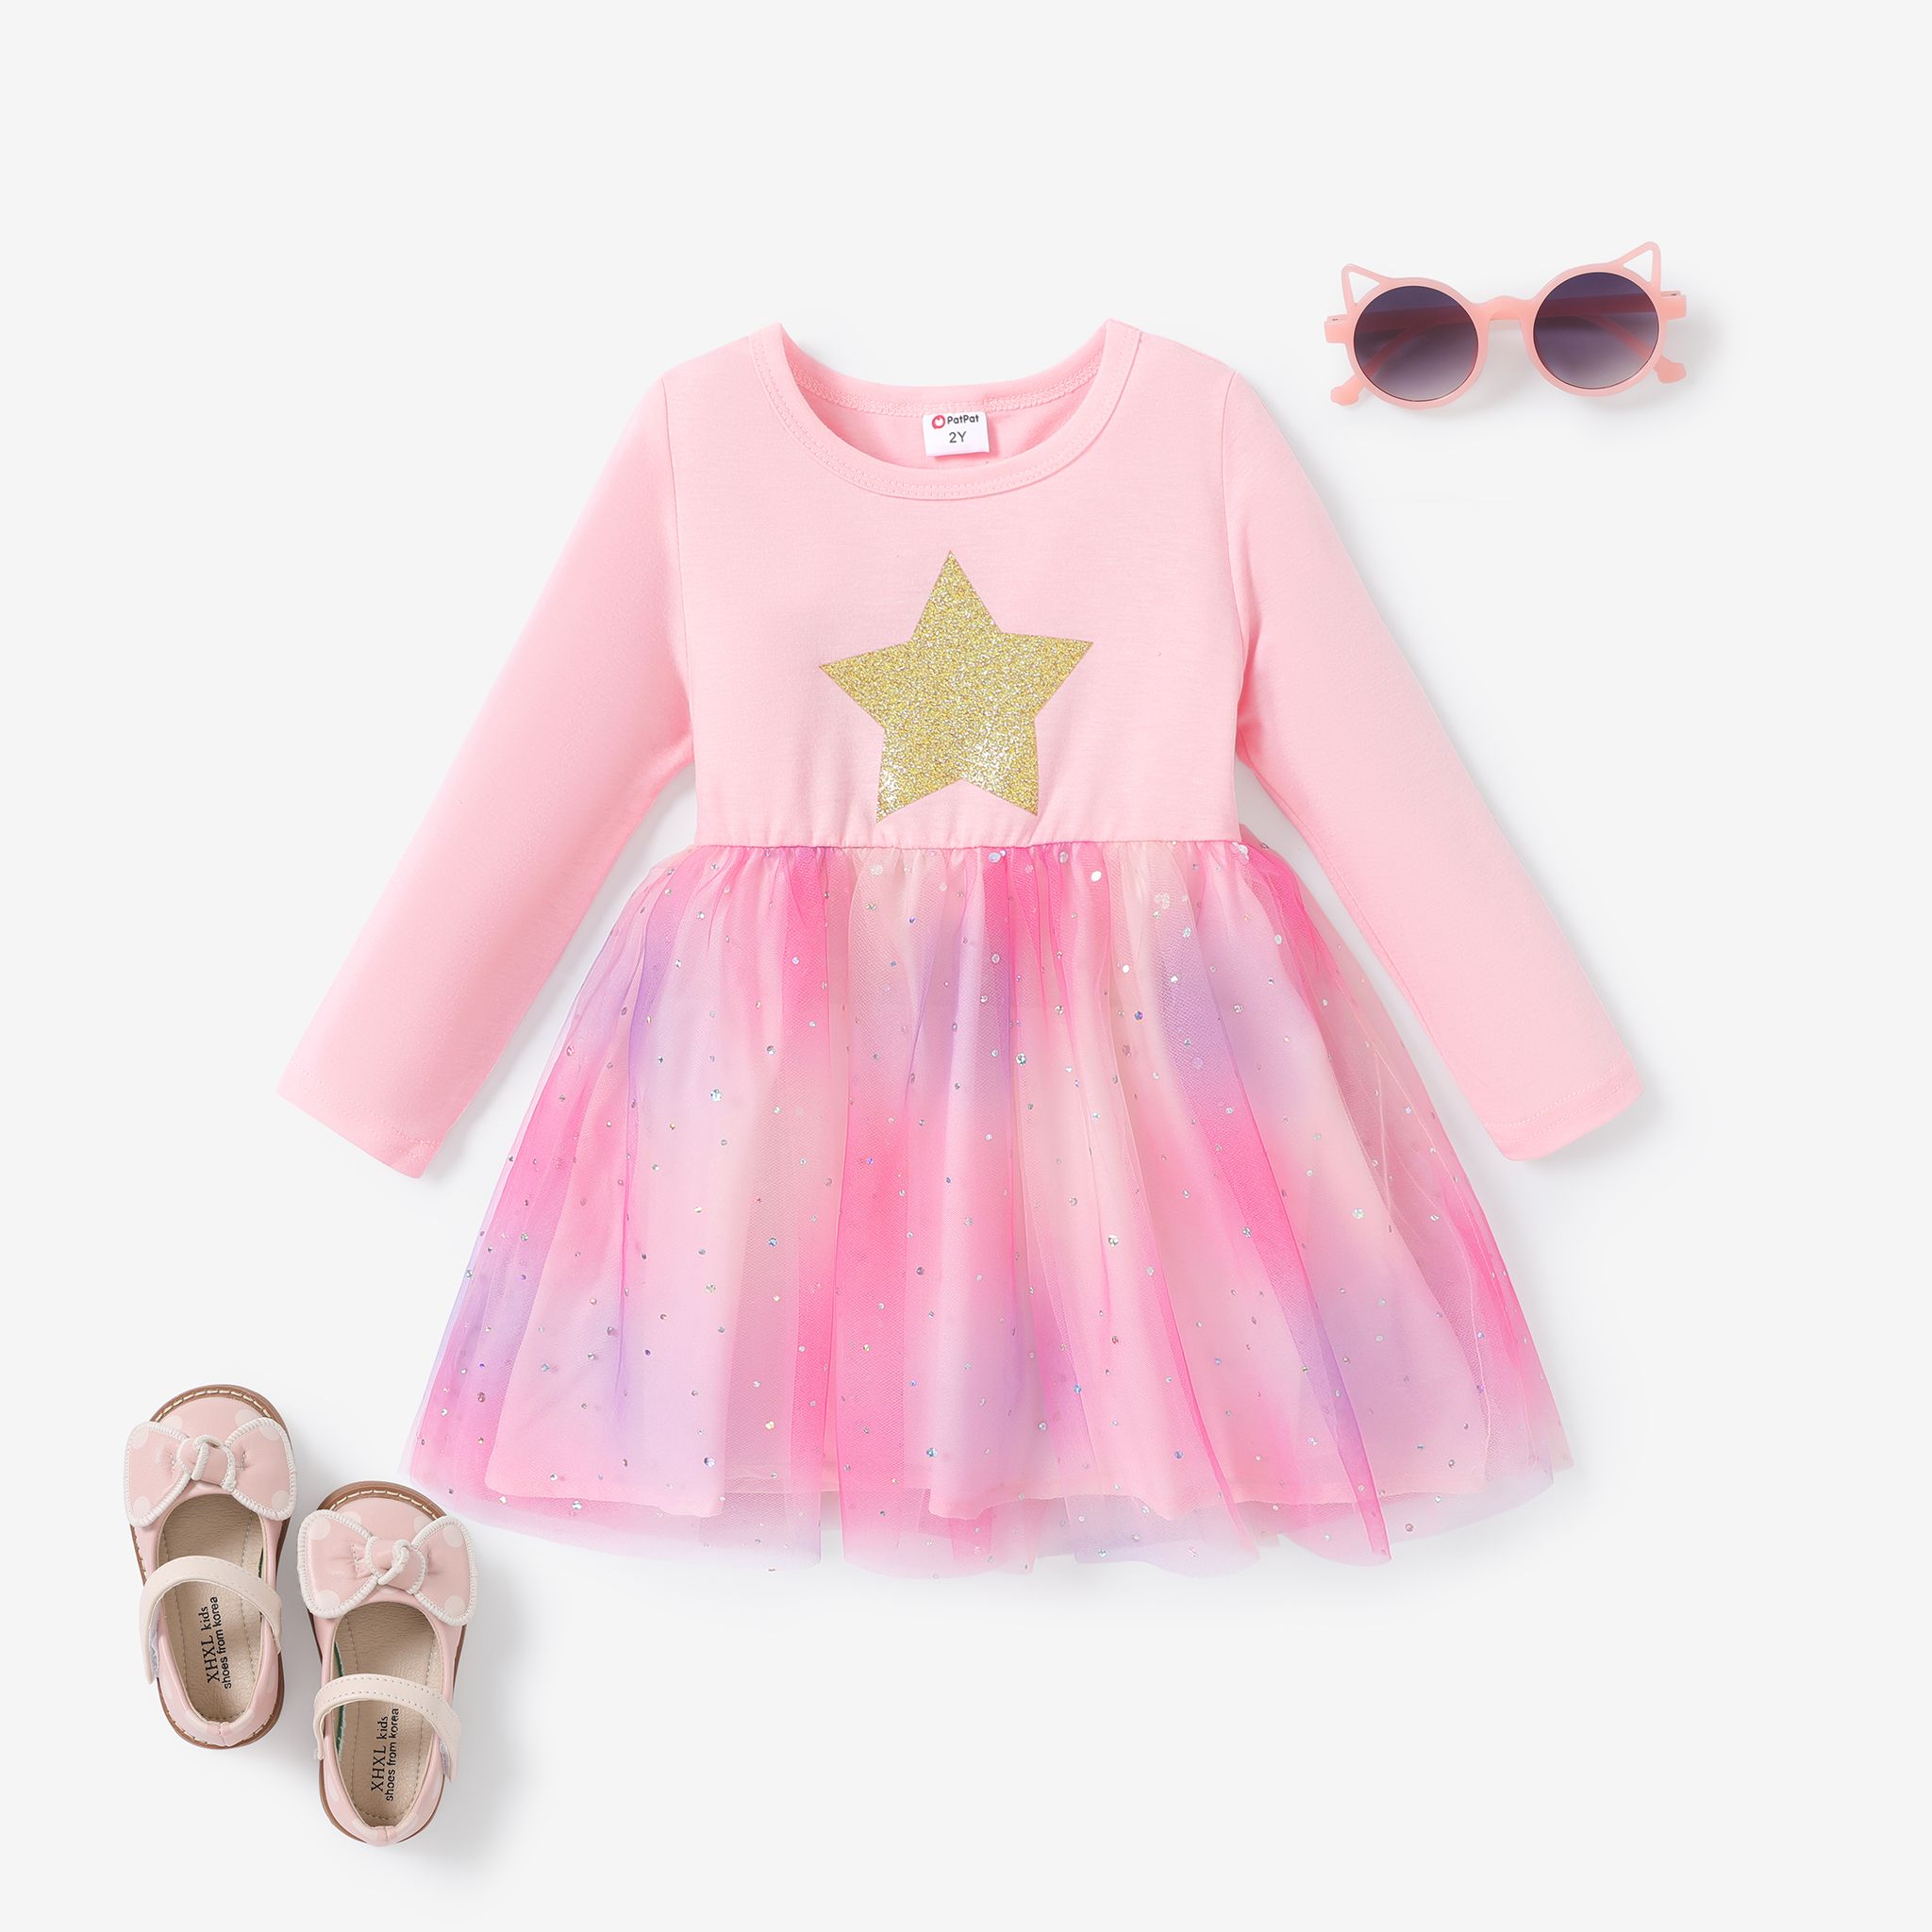 Sweet Toddler Girl 網面連衣裙 - 多層星星/月亮/雲朵印花 - 長袖 - 1 件套